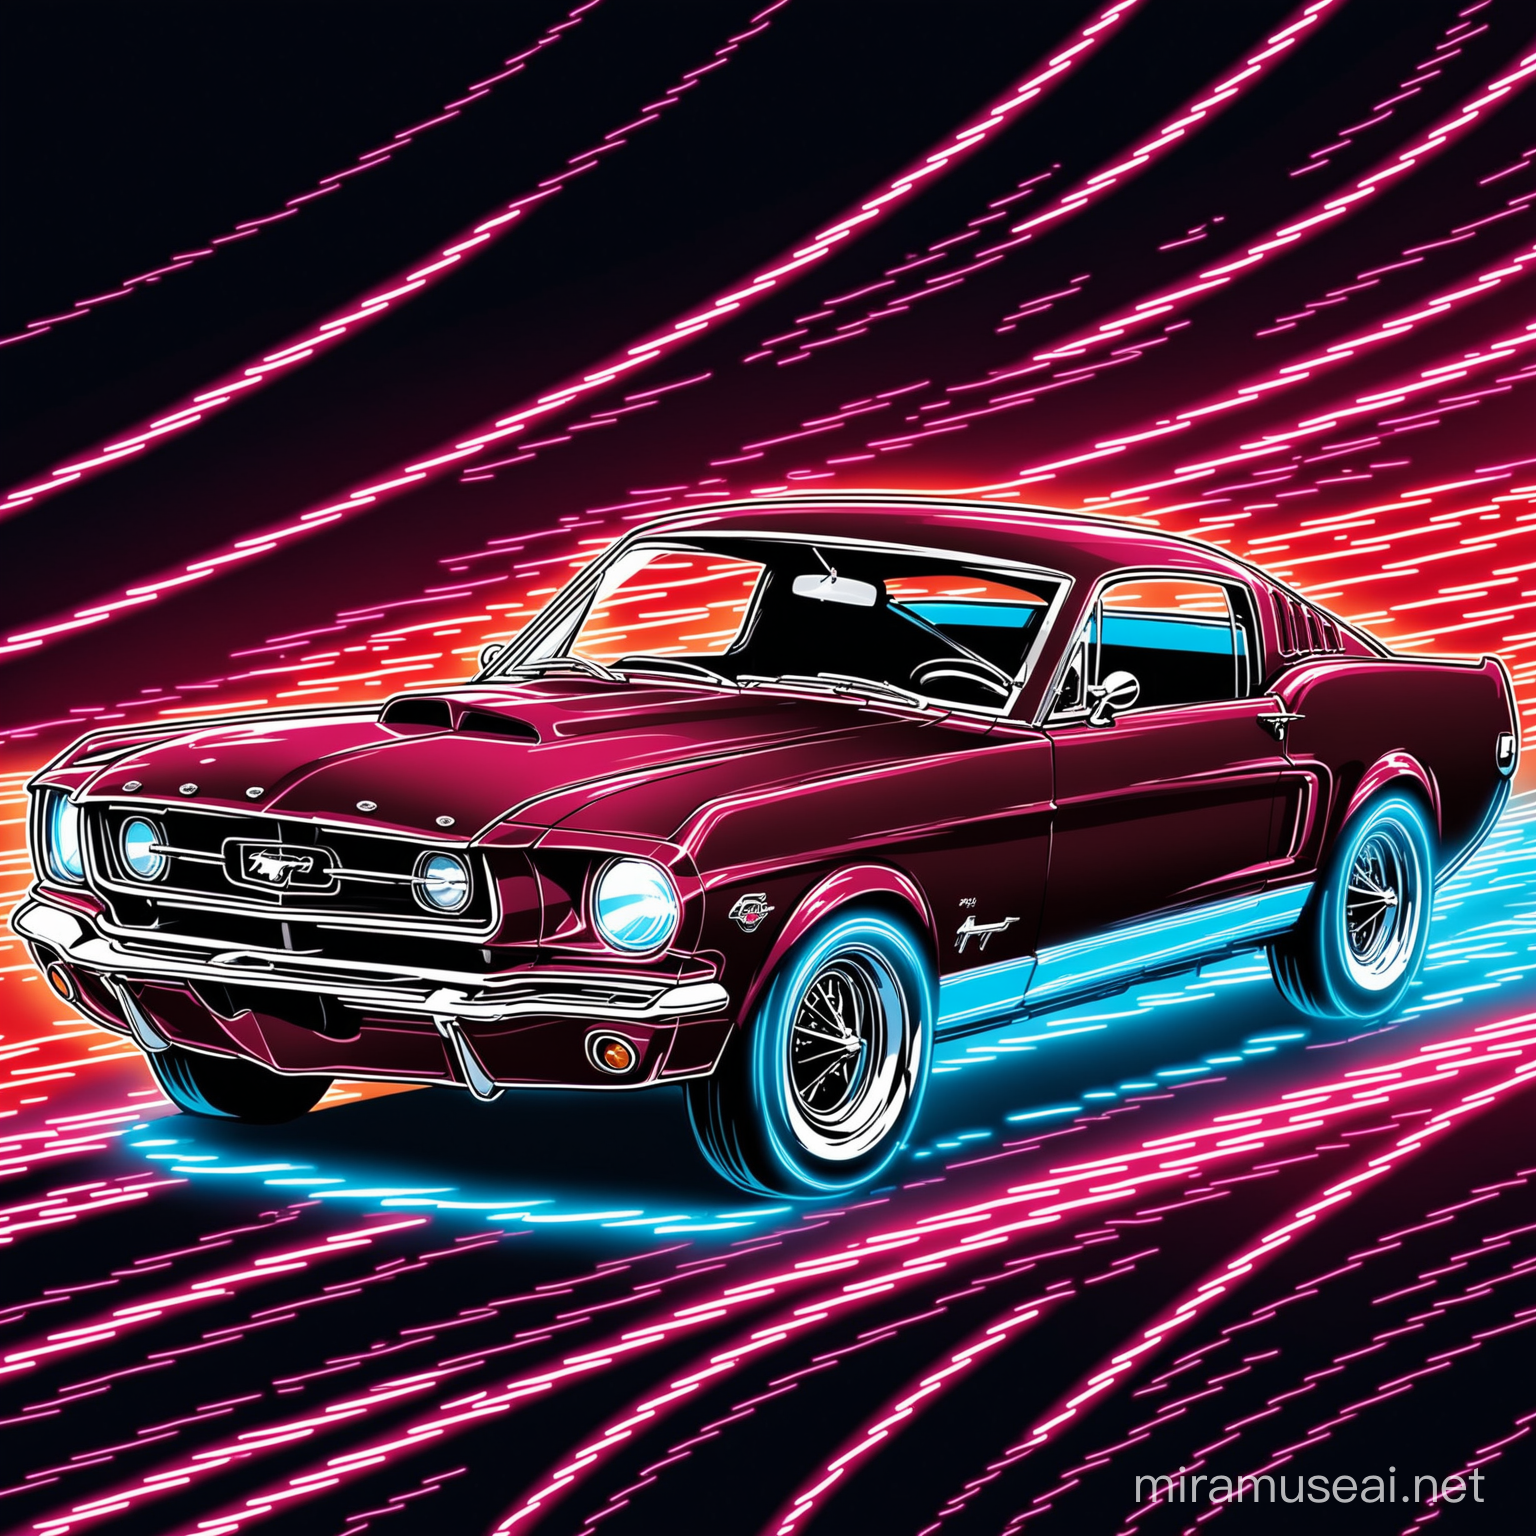 Ford Mustang clásico rojo vino, lineas de velocidad de neón rojo y azul, art retro